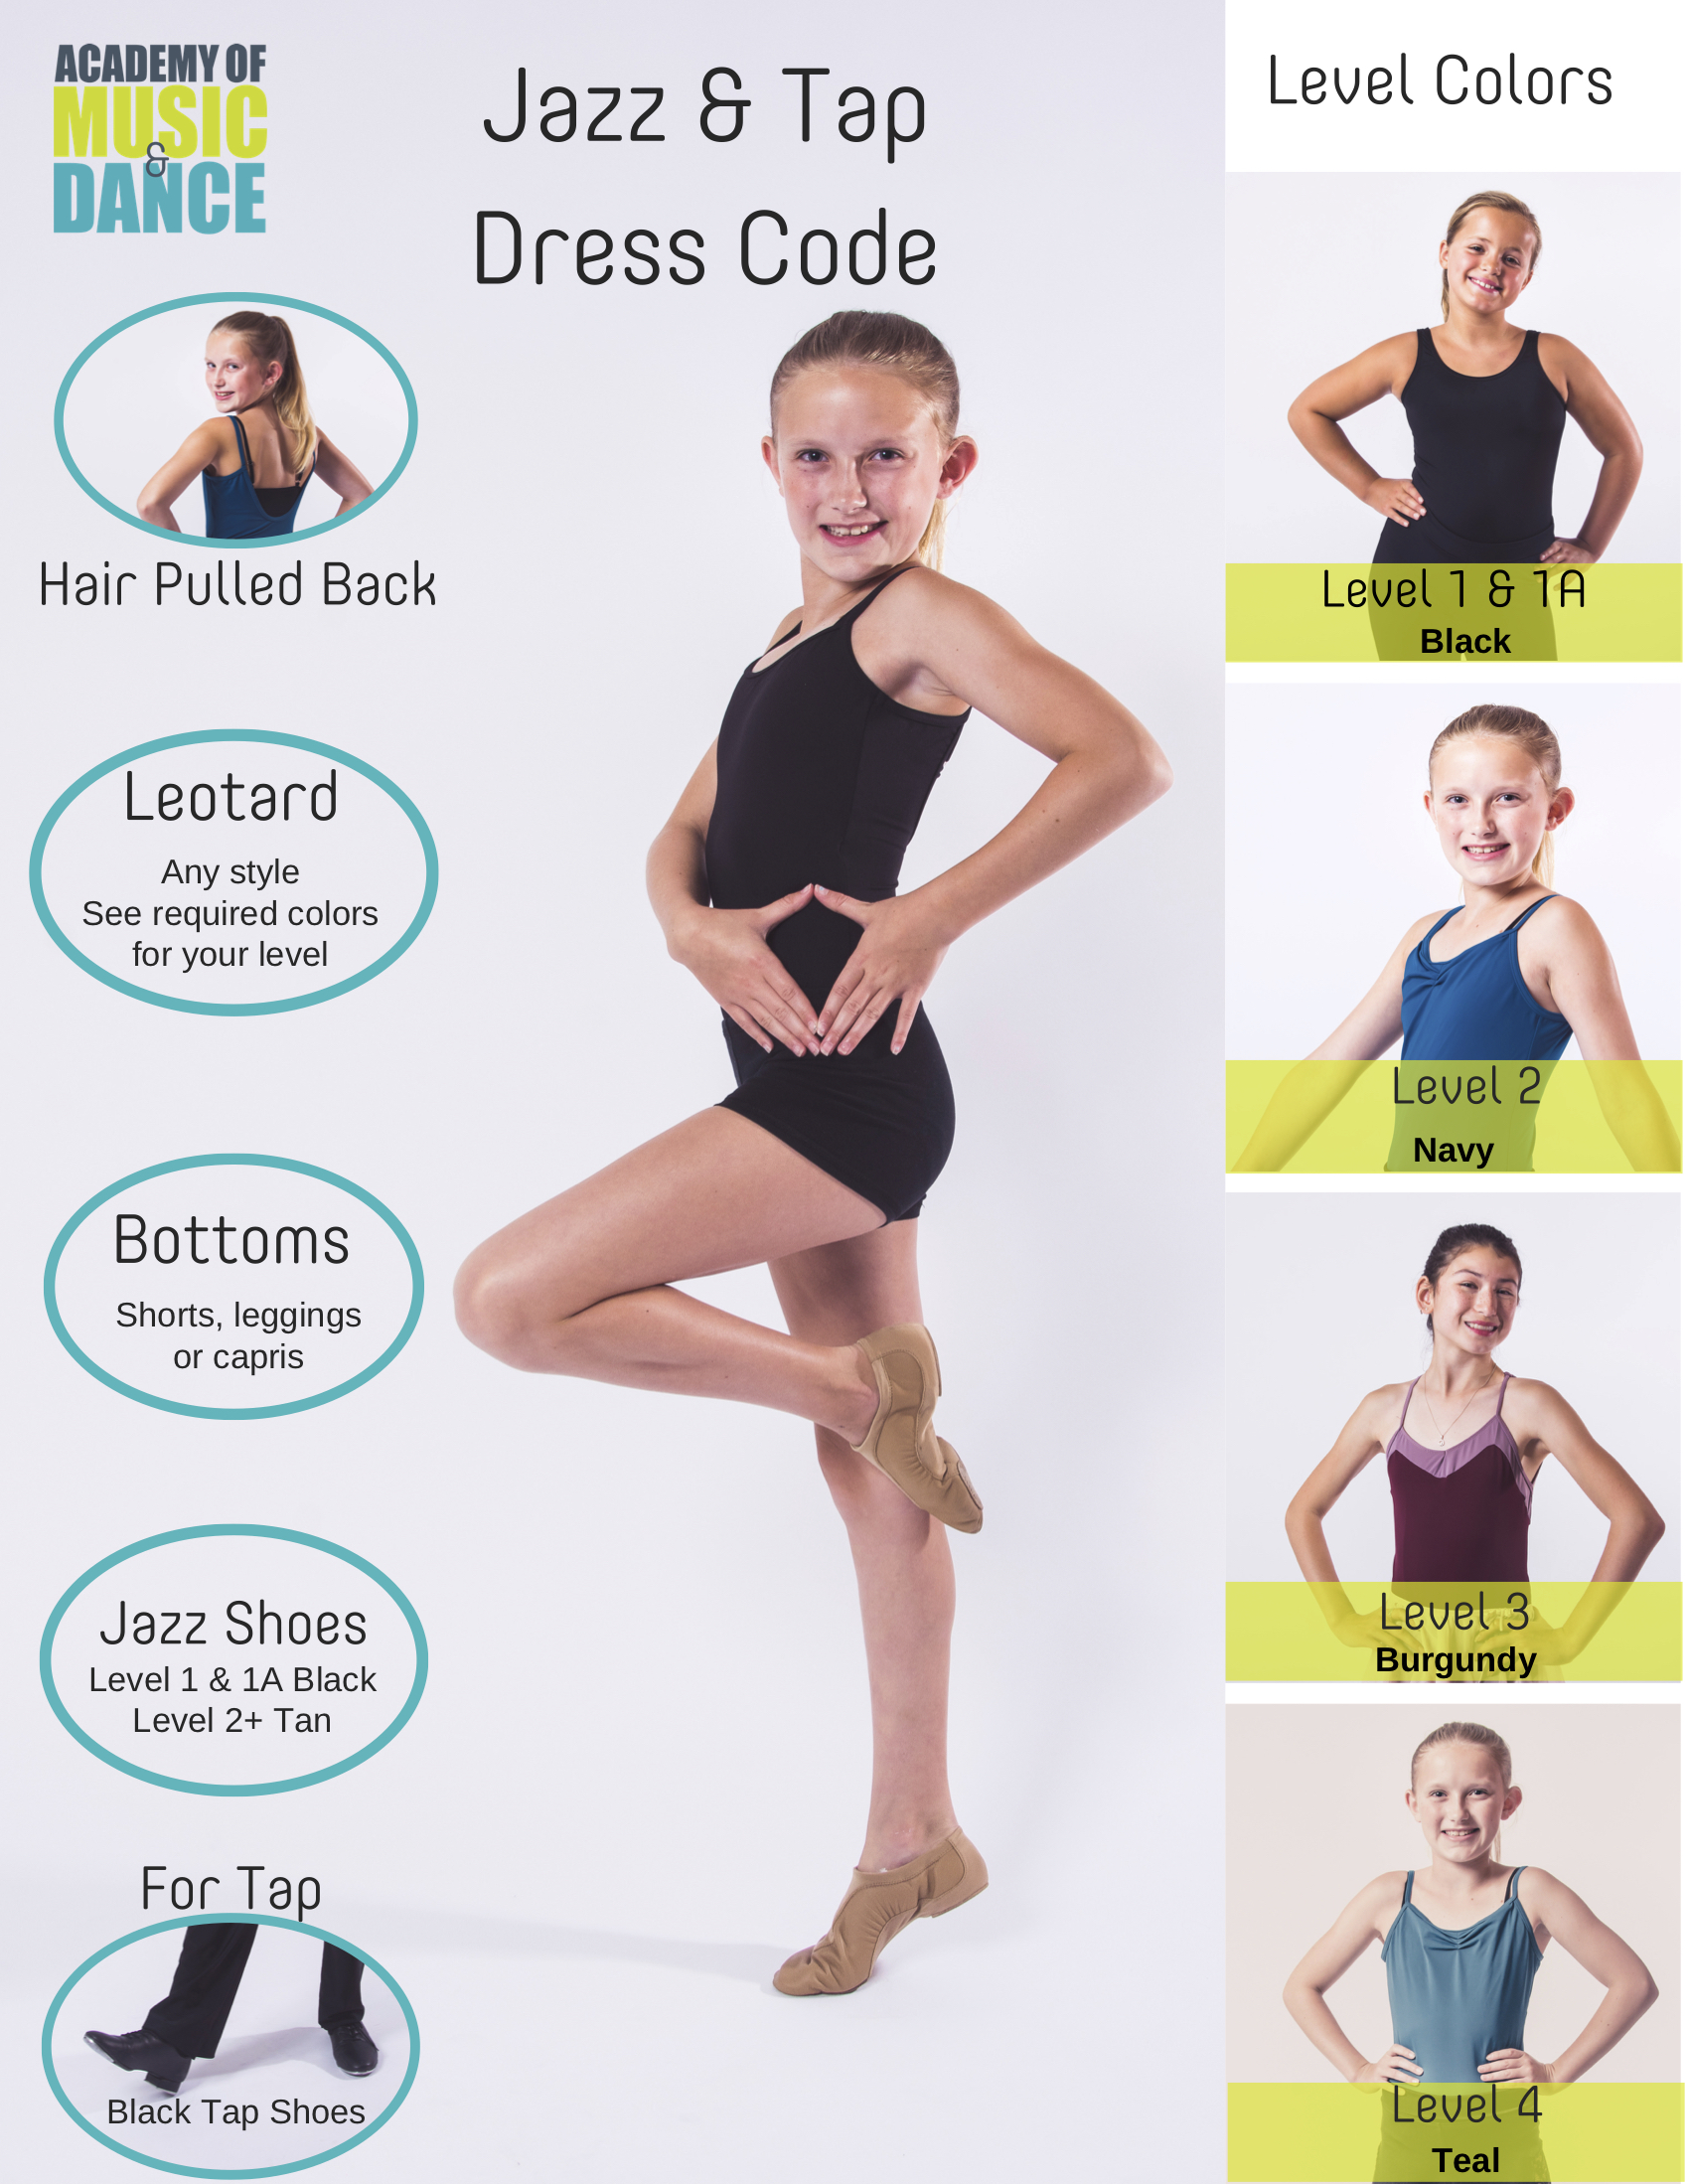 Jazz & Tap Class Dress Code on Pinterest